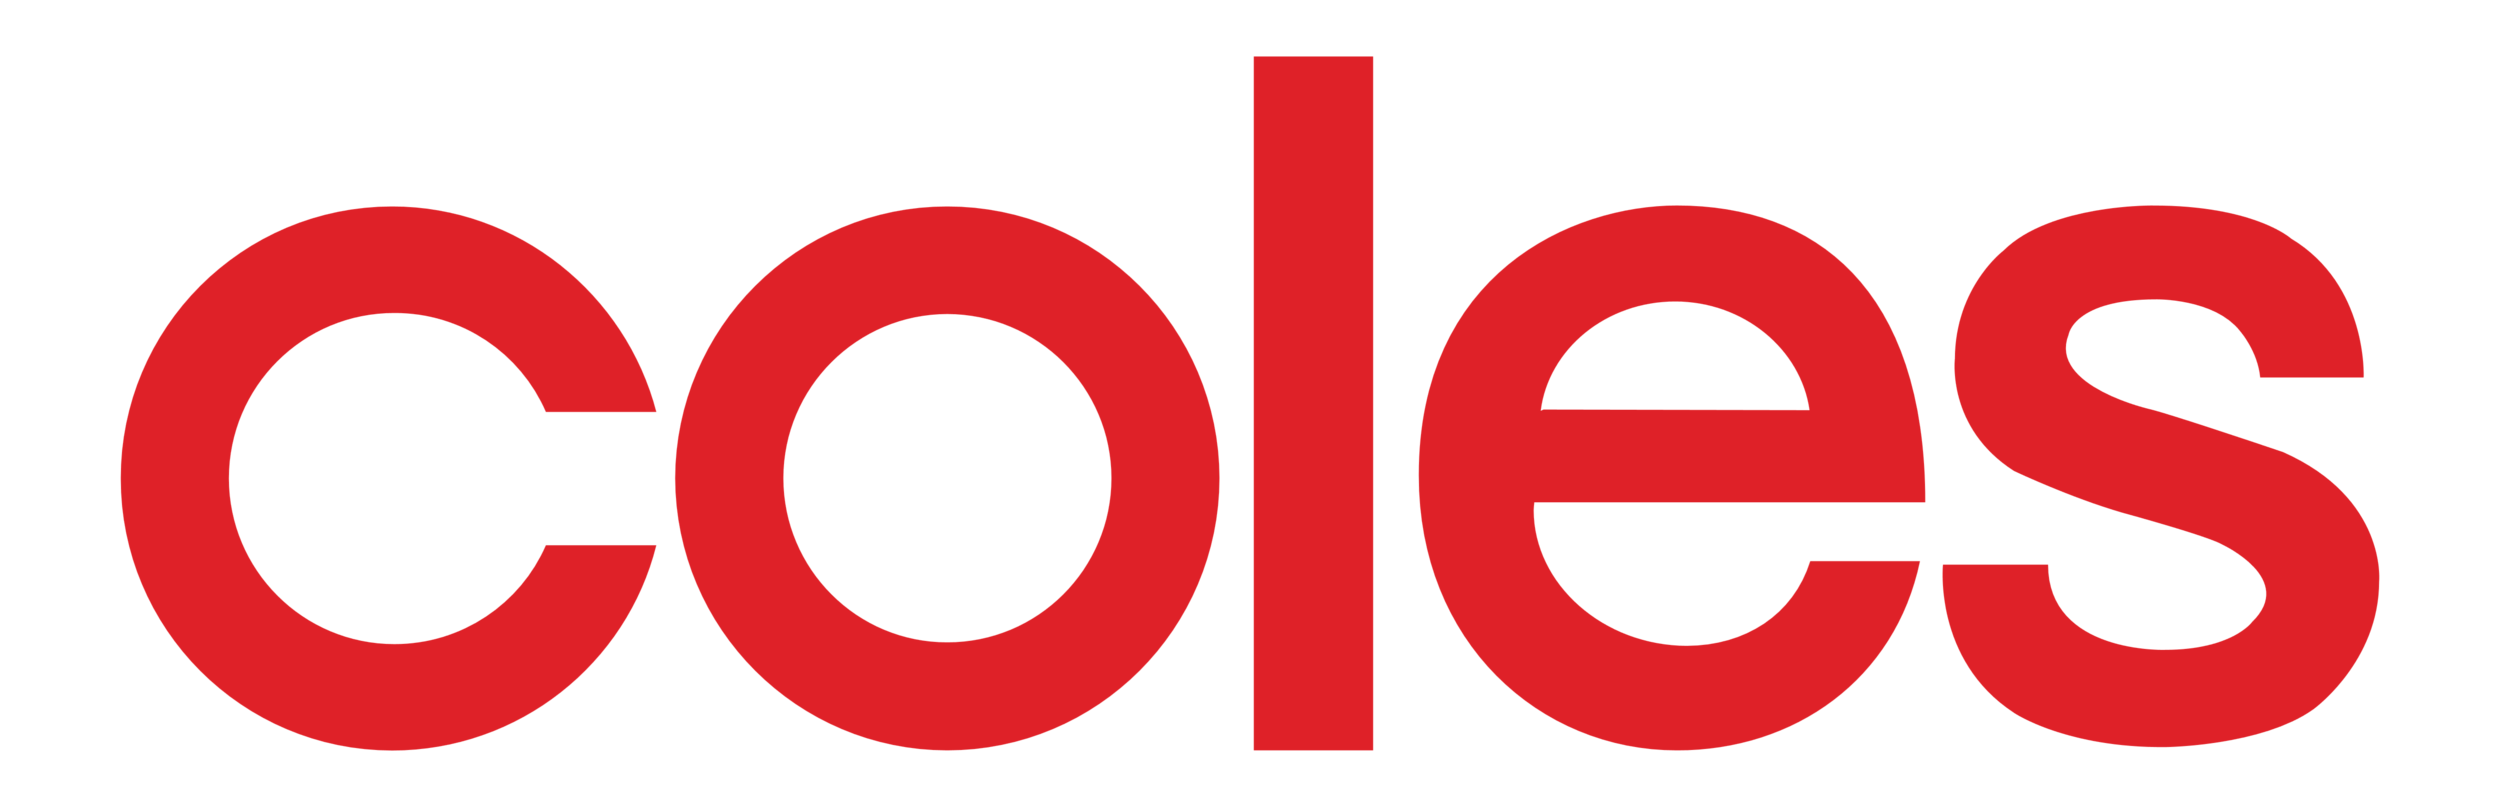 Coles_logo_logotype.png